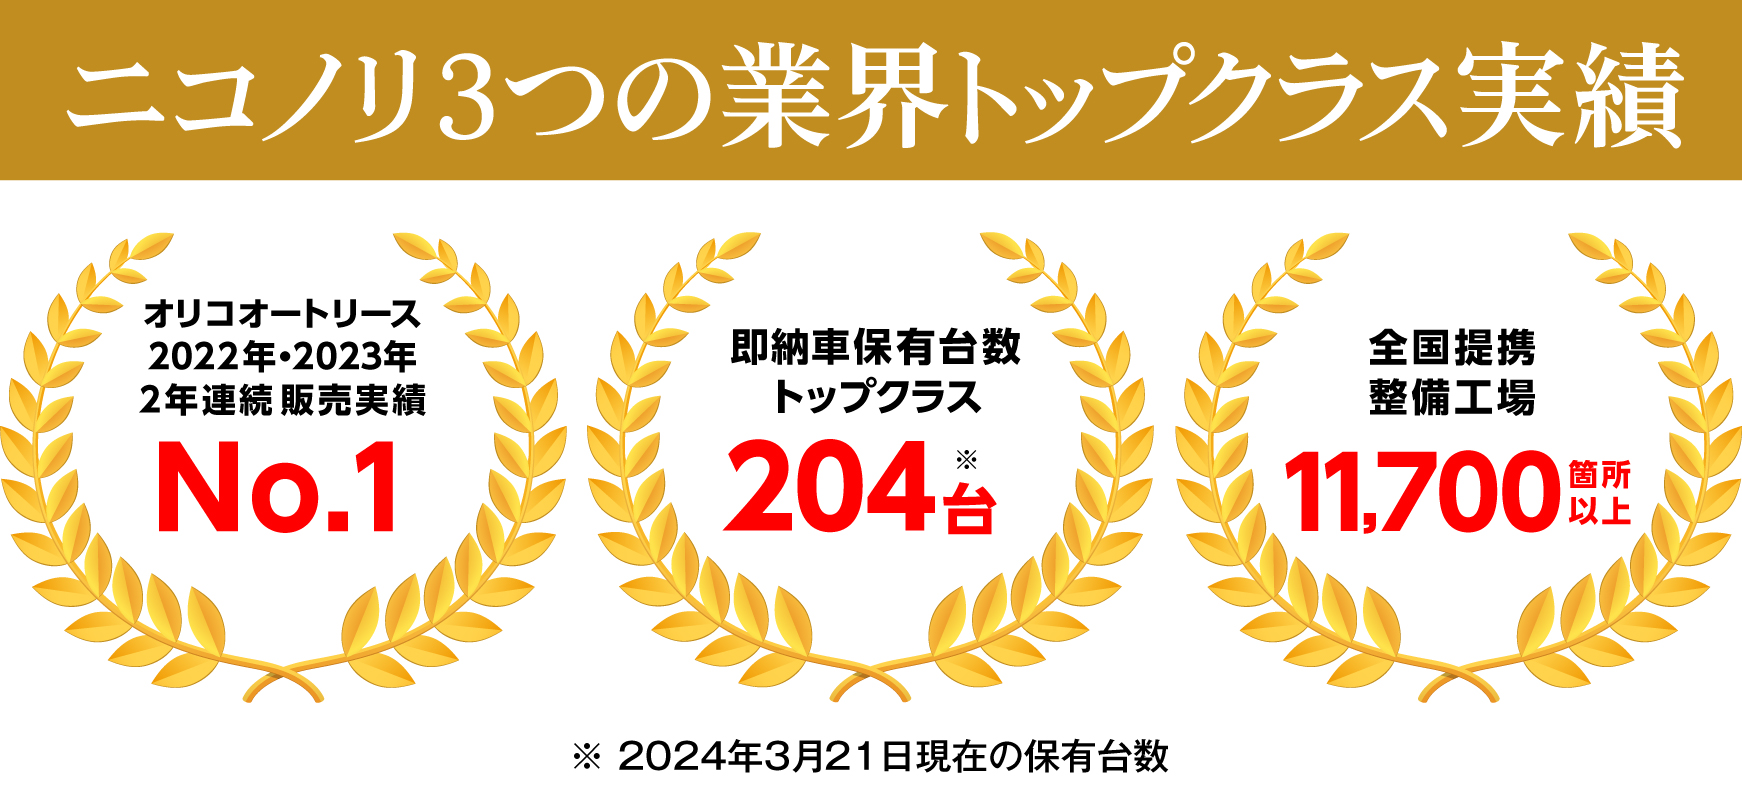 おかげさまでニコノリは2020年カーリース部門3冠達成!